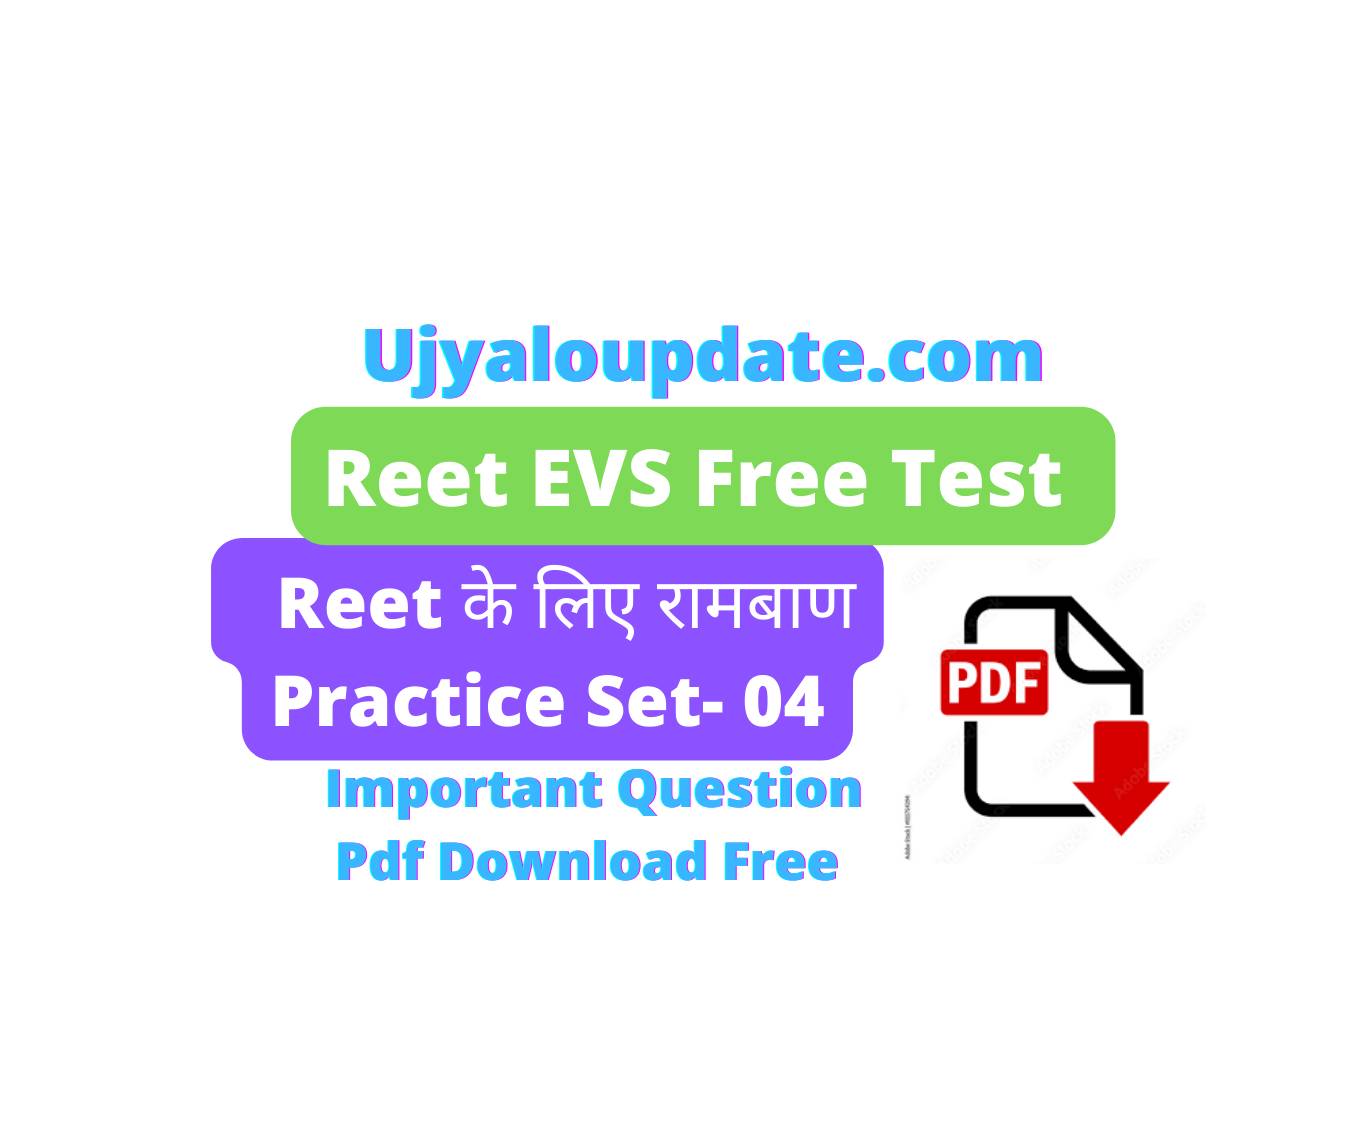 reet evs free test series